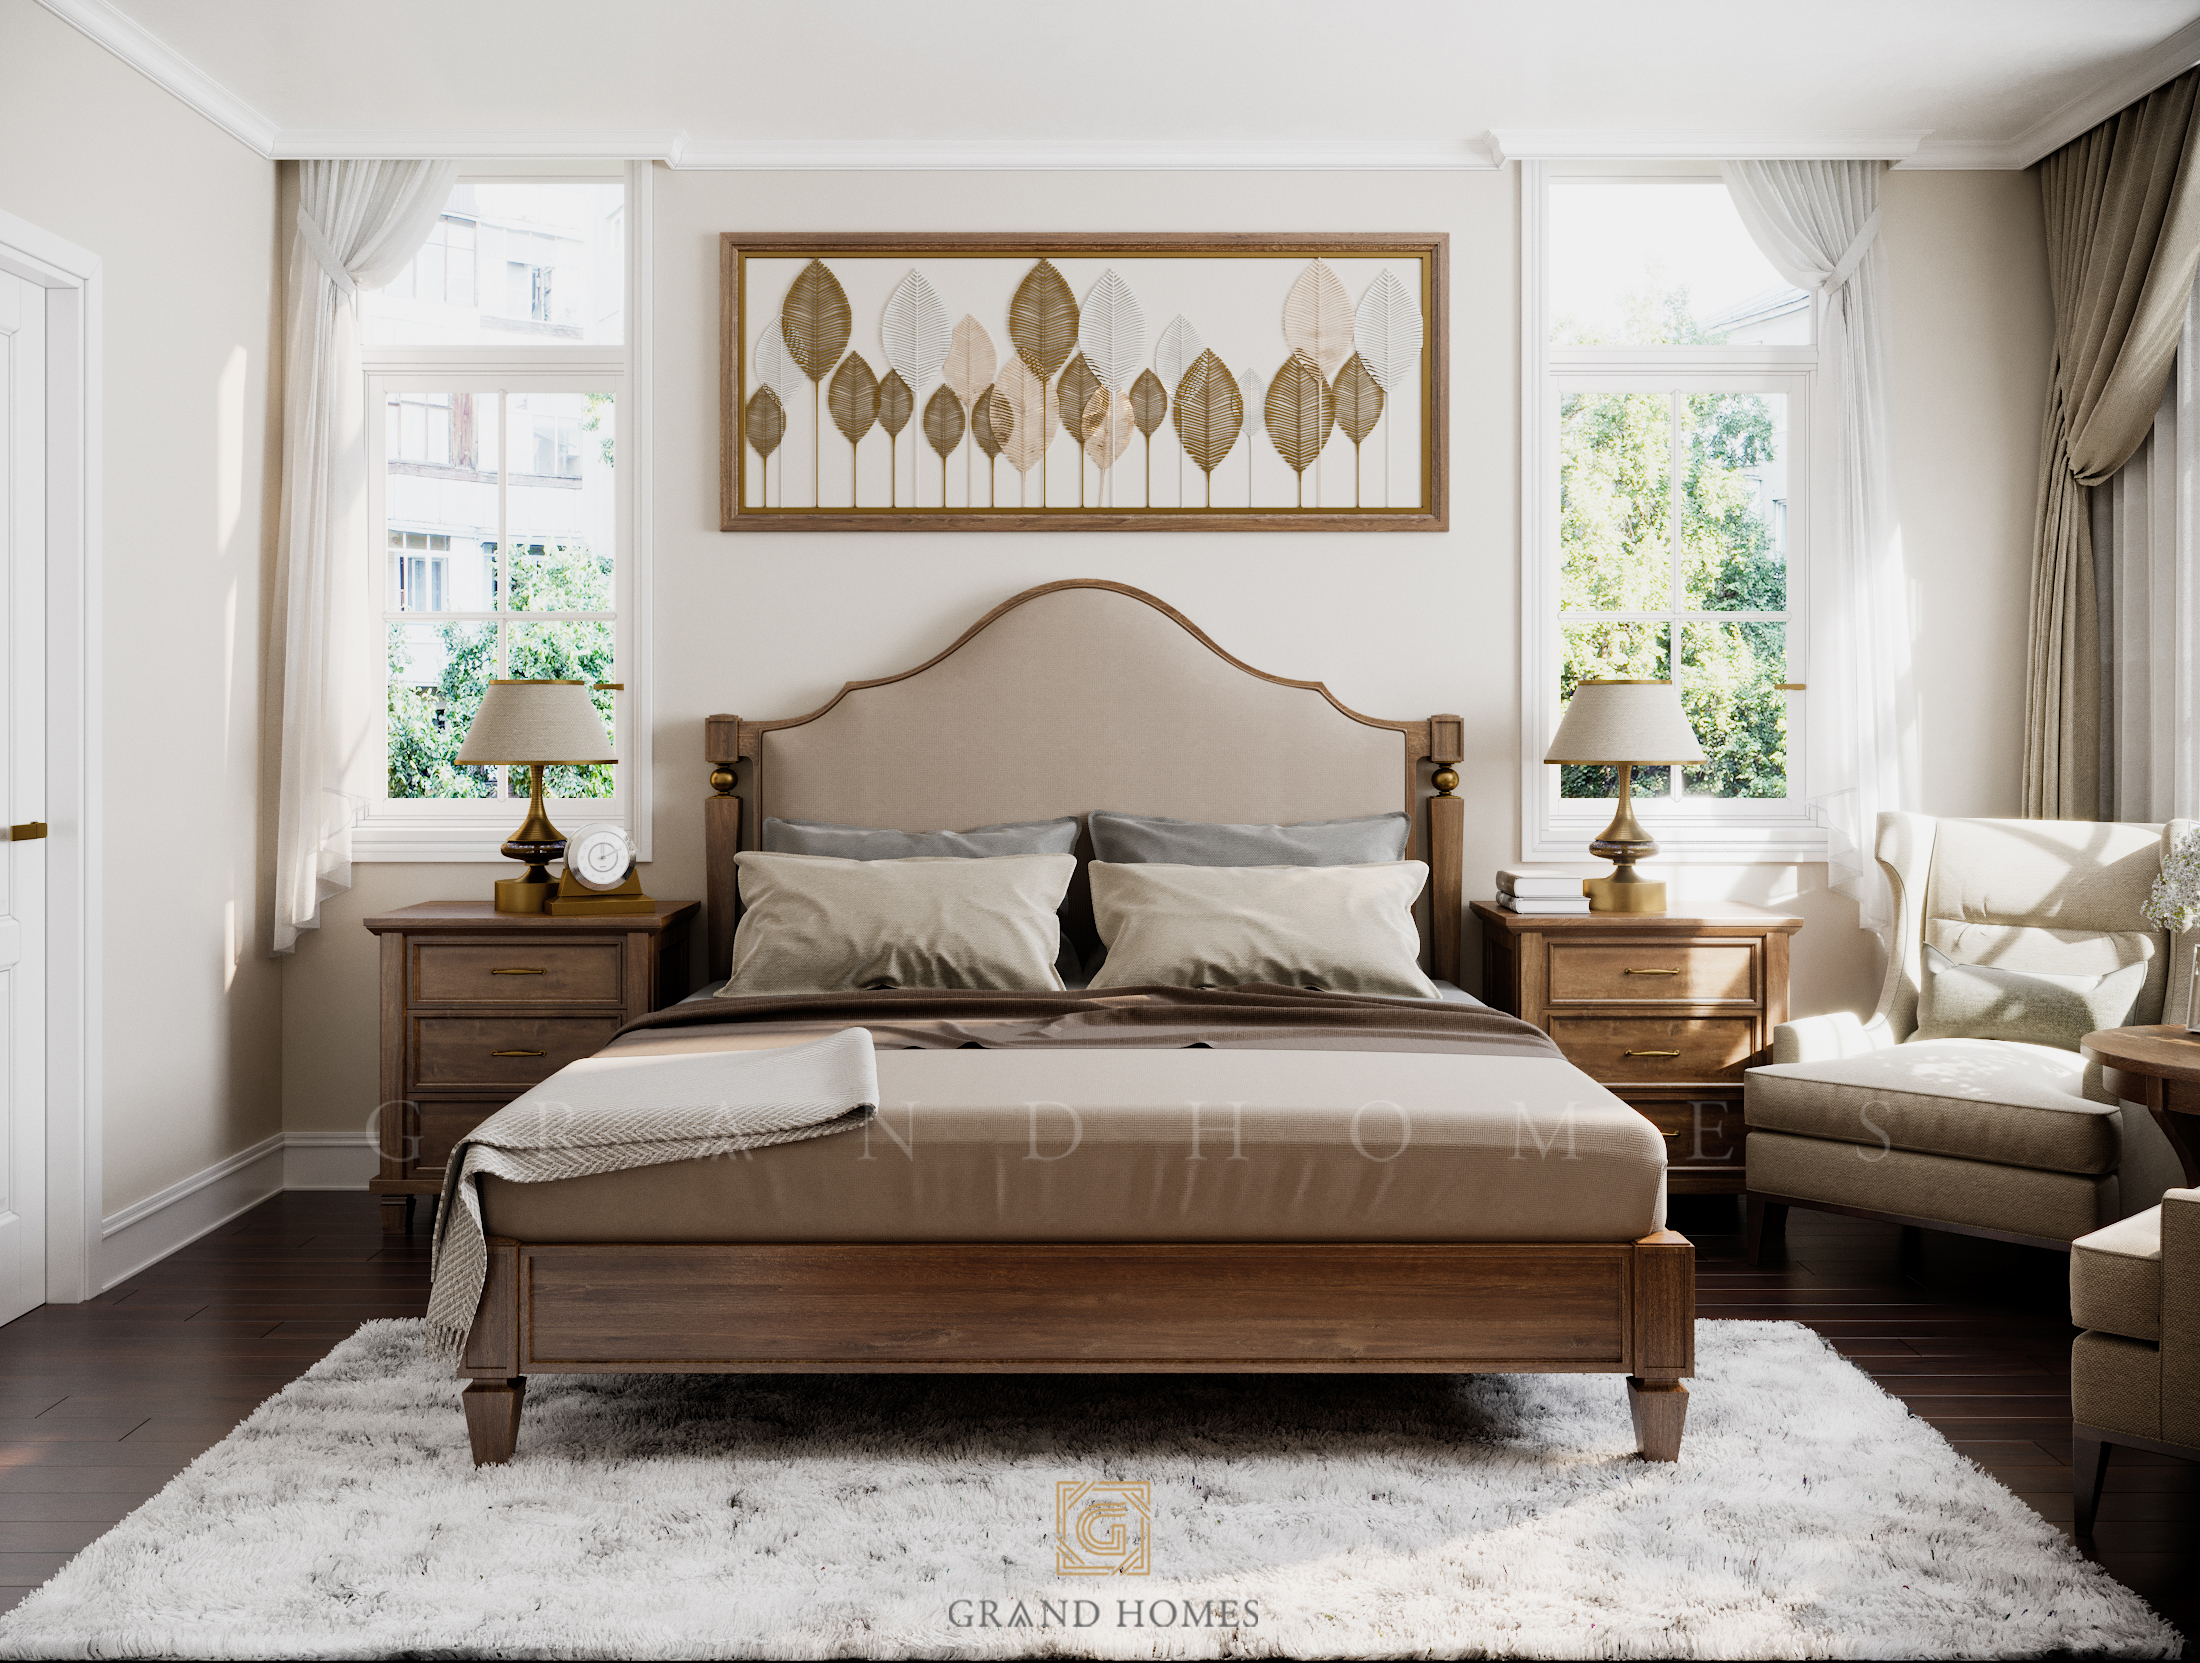 Thiết kế phòng ngủ rộng rãi thoải mái phong cách Traditional